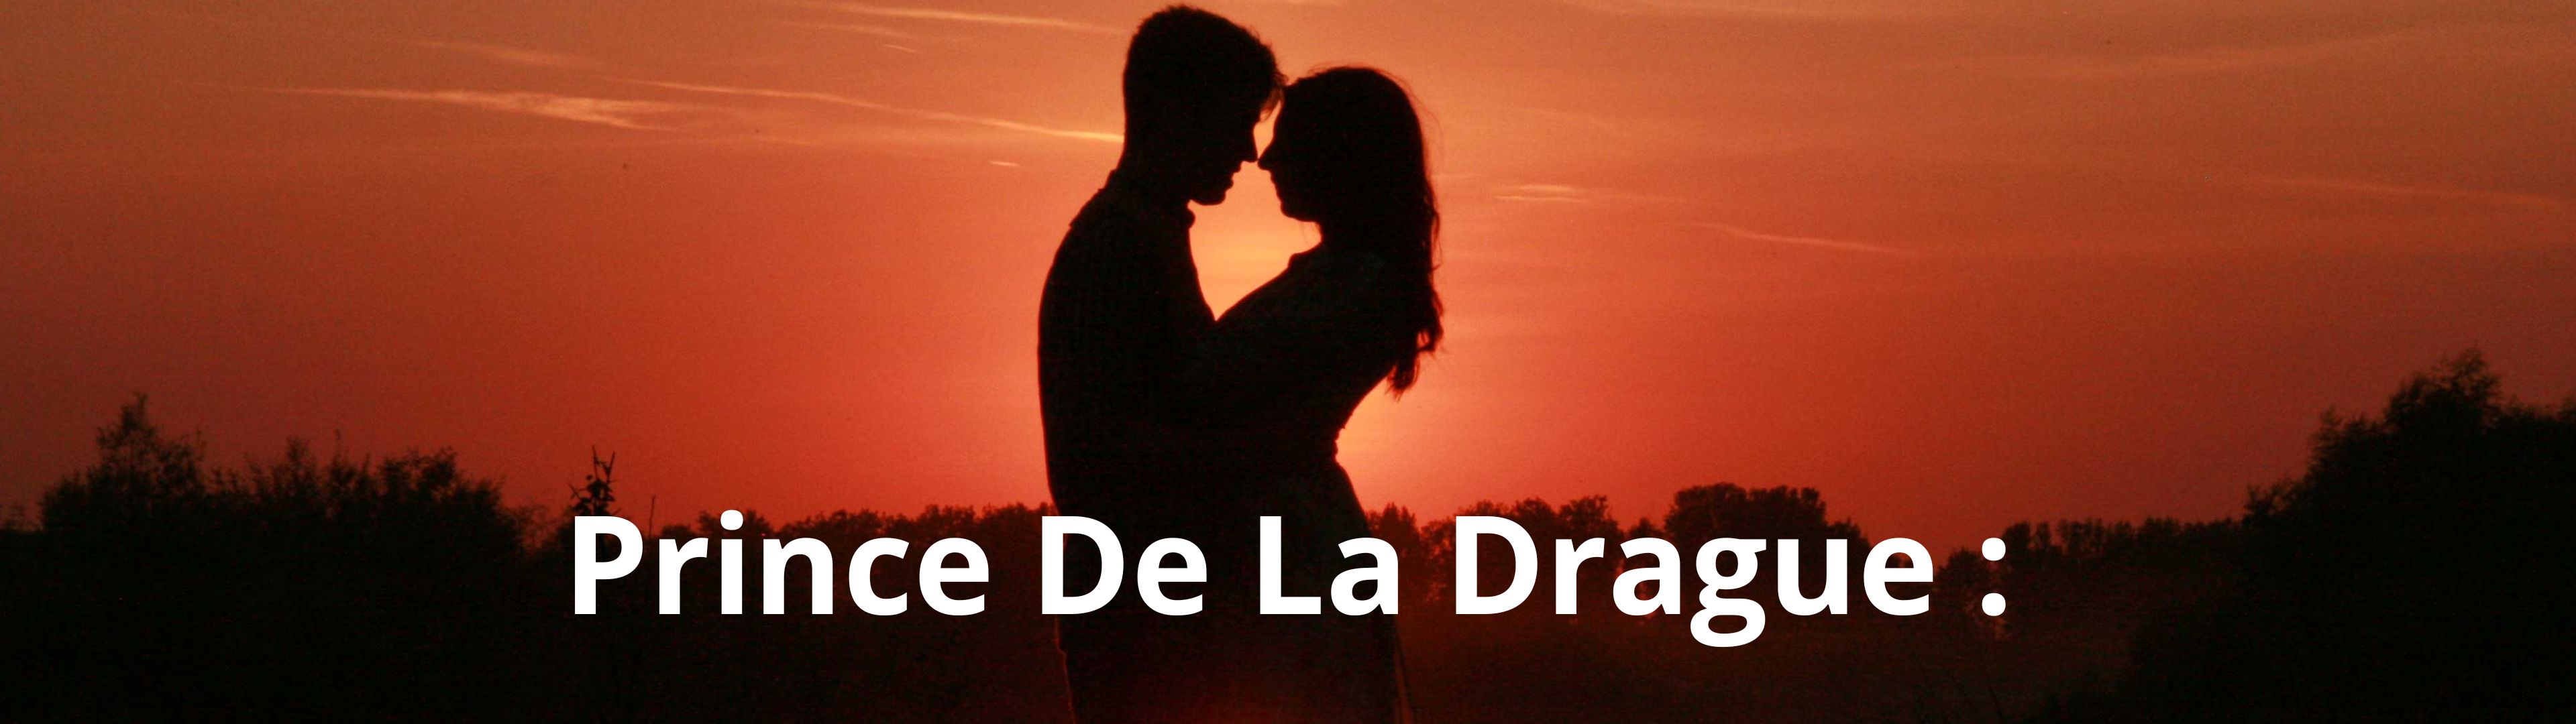 Prince De La Drague -  Un jeu de séduction !